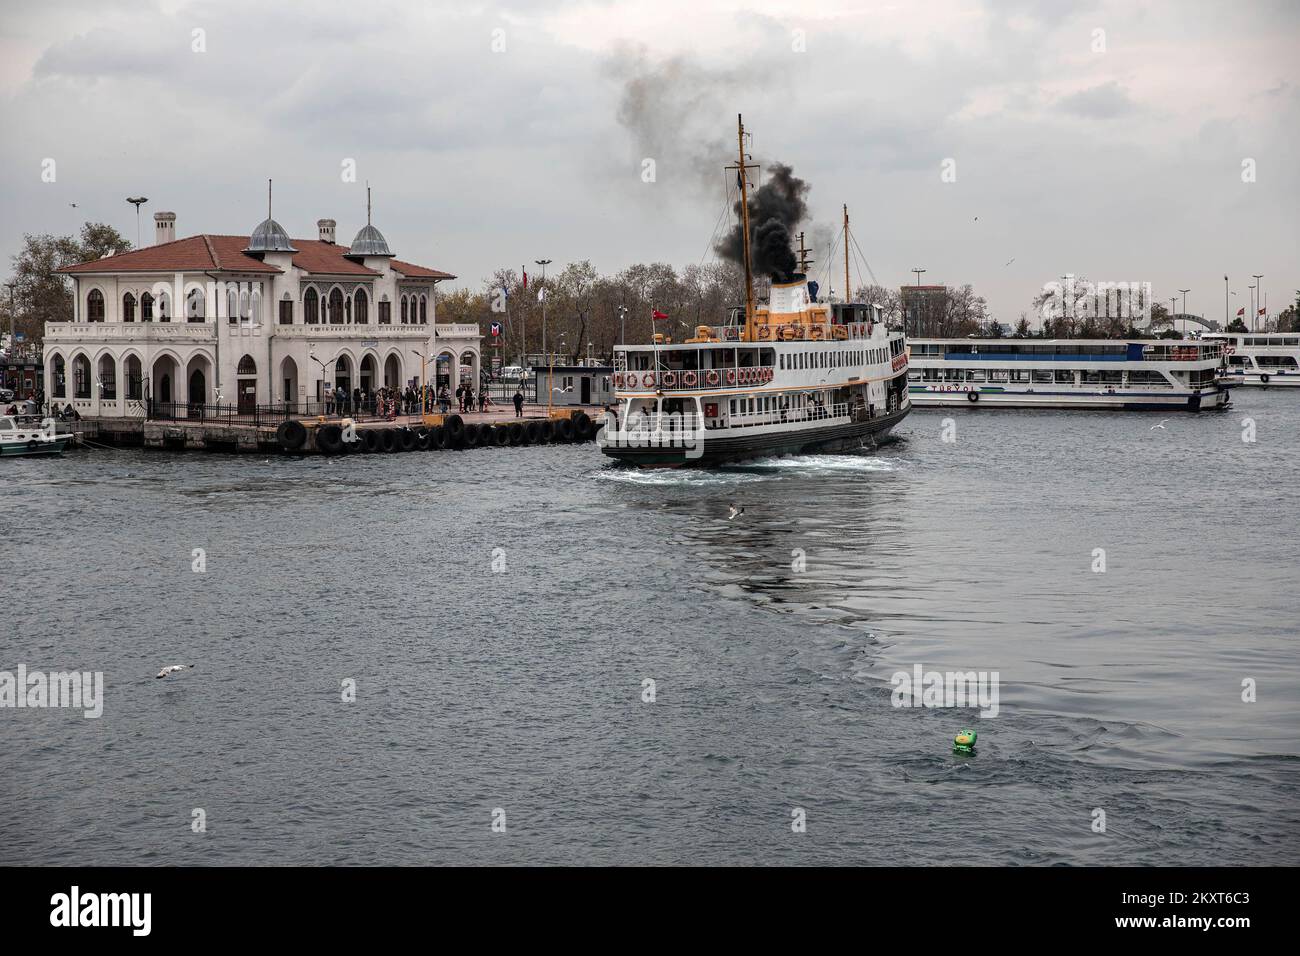 Un ferry de la ville s'approche de l'embarcadère tout en émettant de la fumée pendant une journée nuageux à Istanbul. Banque D'Images